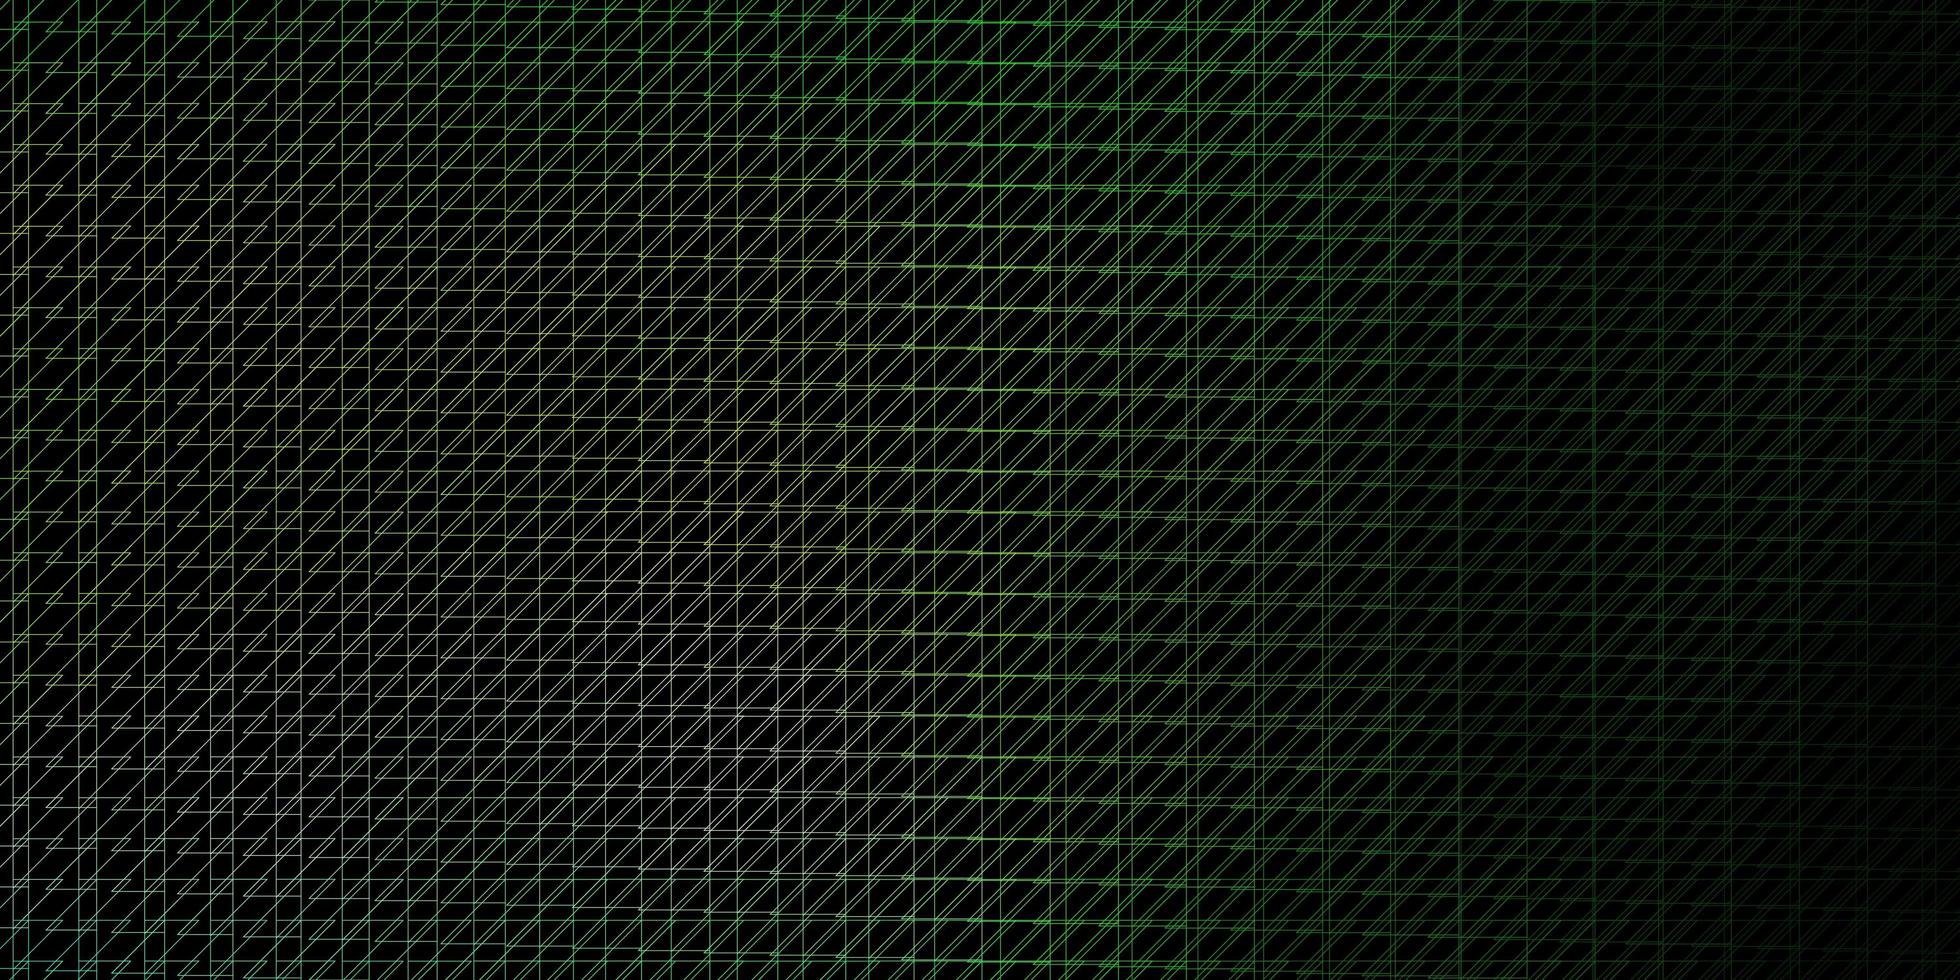 mörkgrön vektormall med linjer. vektor